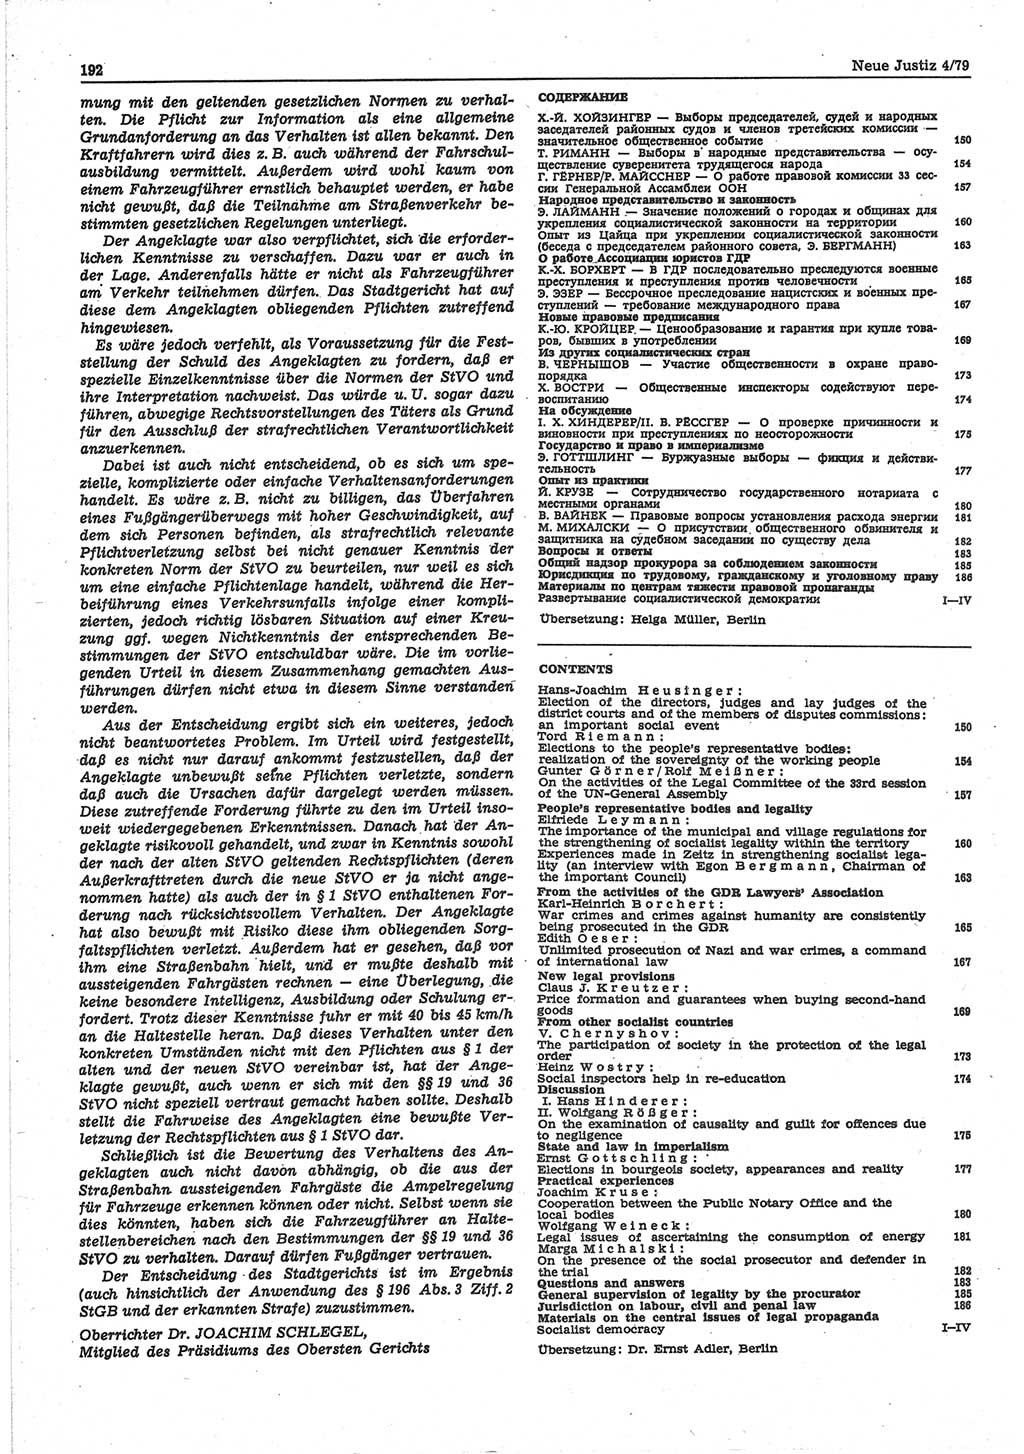 Neue Justiz (NJ), Zeitschrift für sozialistisches Recht und Gesetzlichkeit [Deutsche Demokratische Republik (DDR)], 33. Jahrgang 1979, Seite 192 (NJ DDR 1979, S. 192)